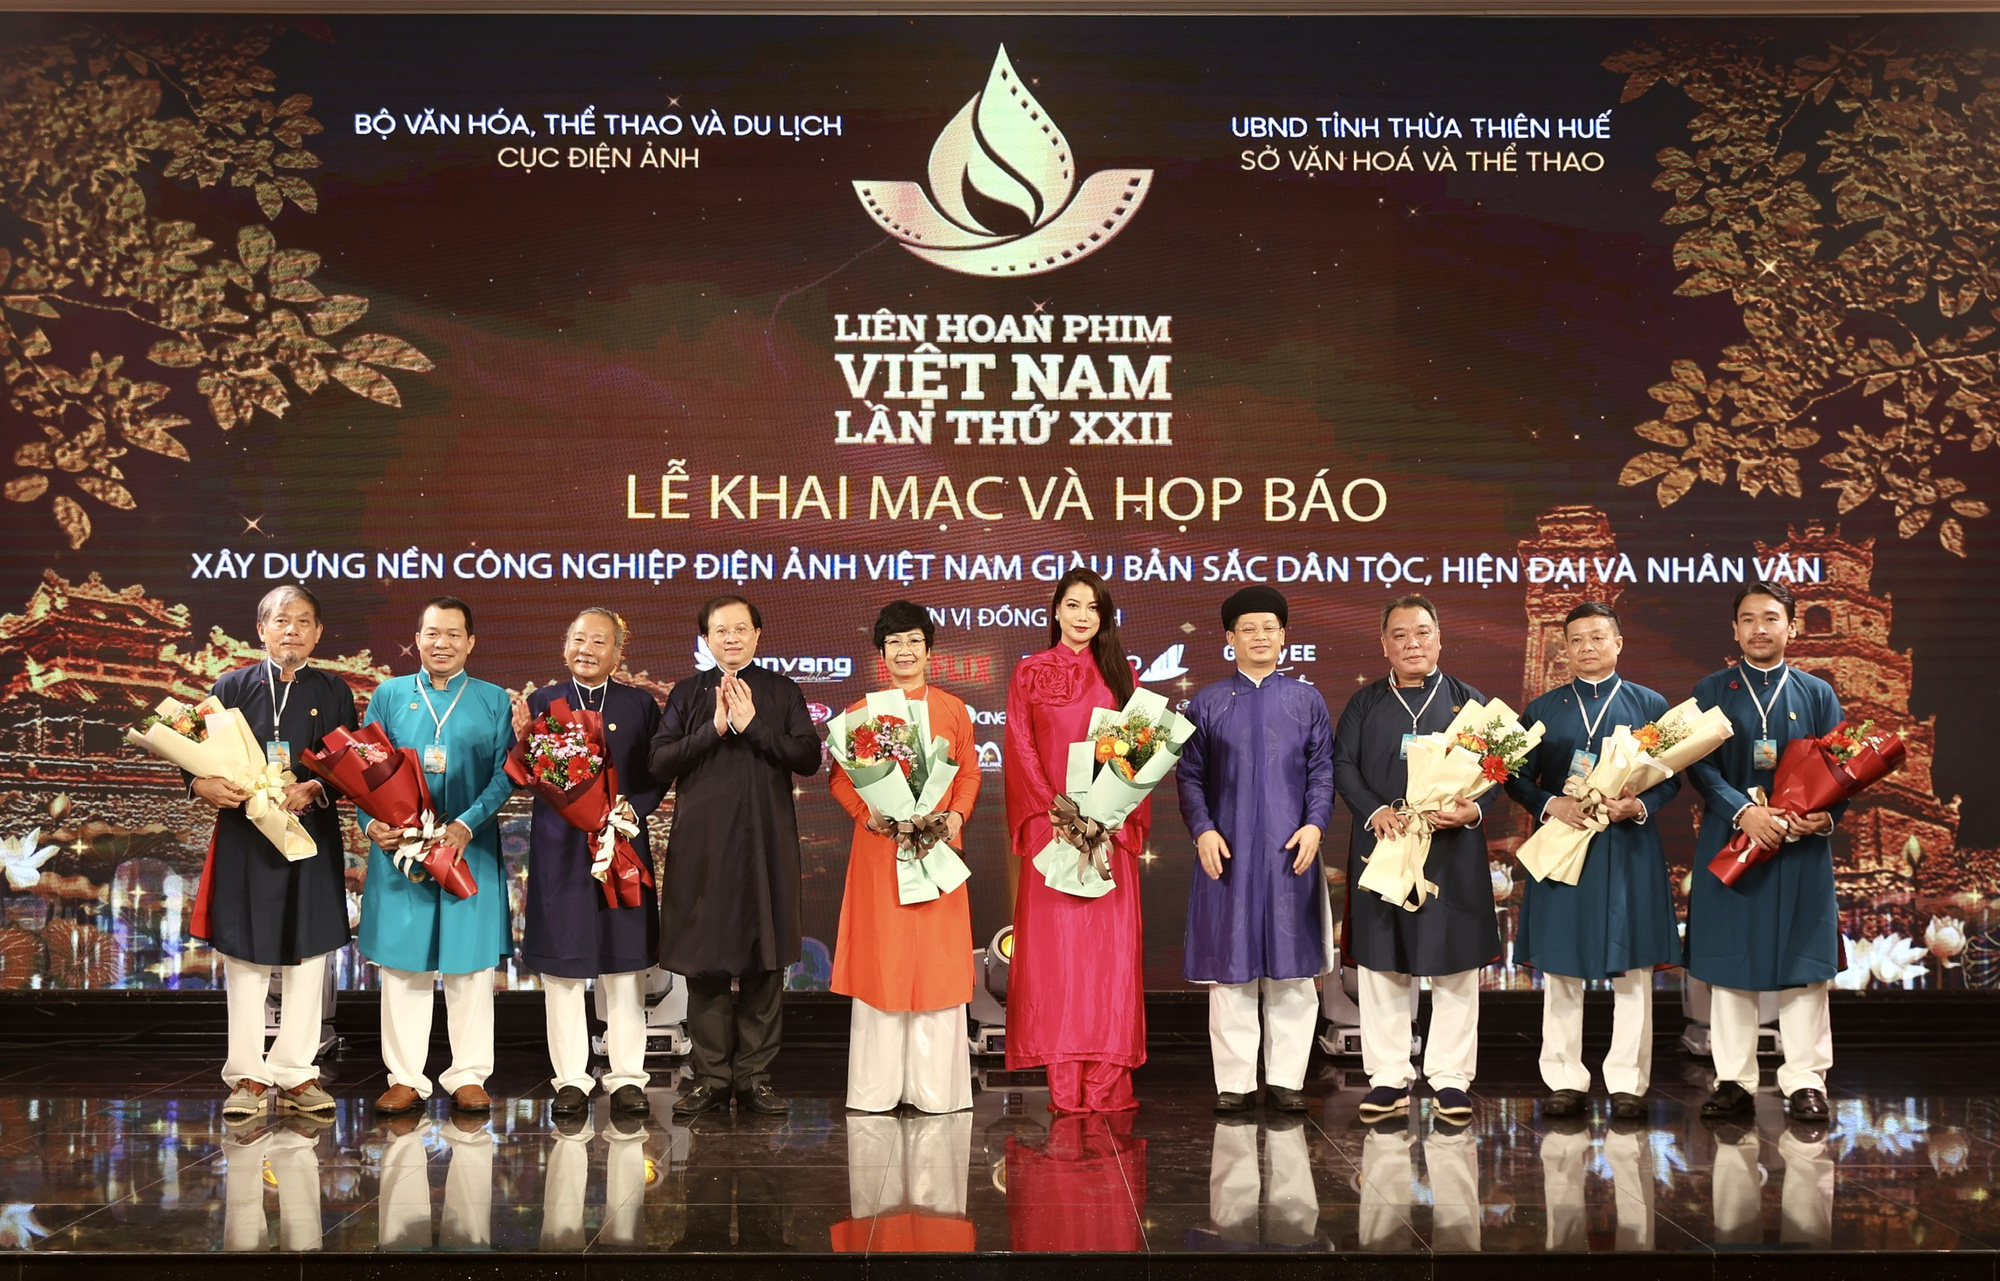 Tổ chức Liên hoan Phim Việt Nam lần thứ XXIII tại tỉnh Lâm Đồng